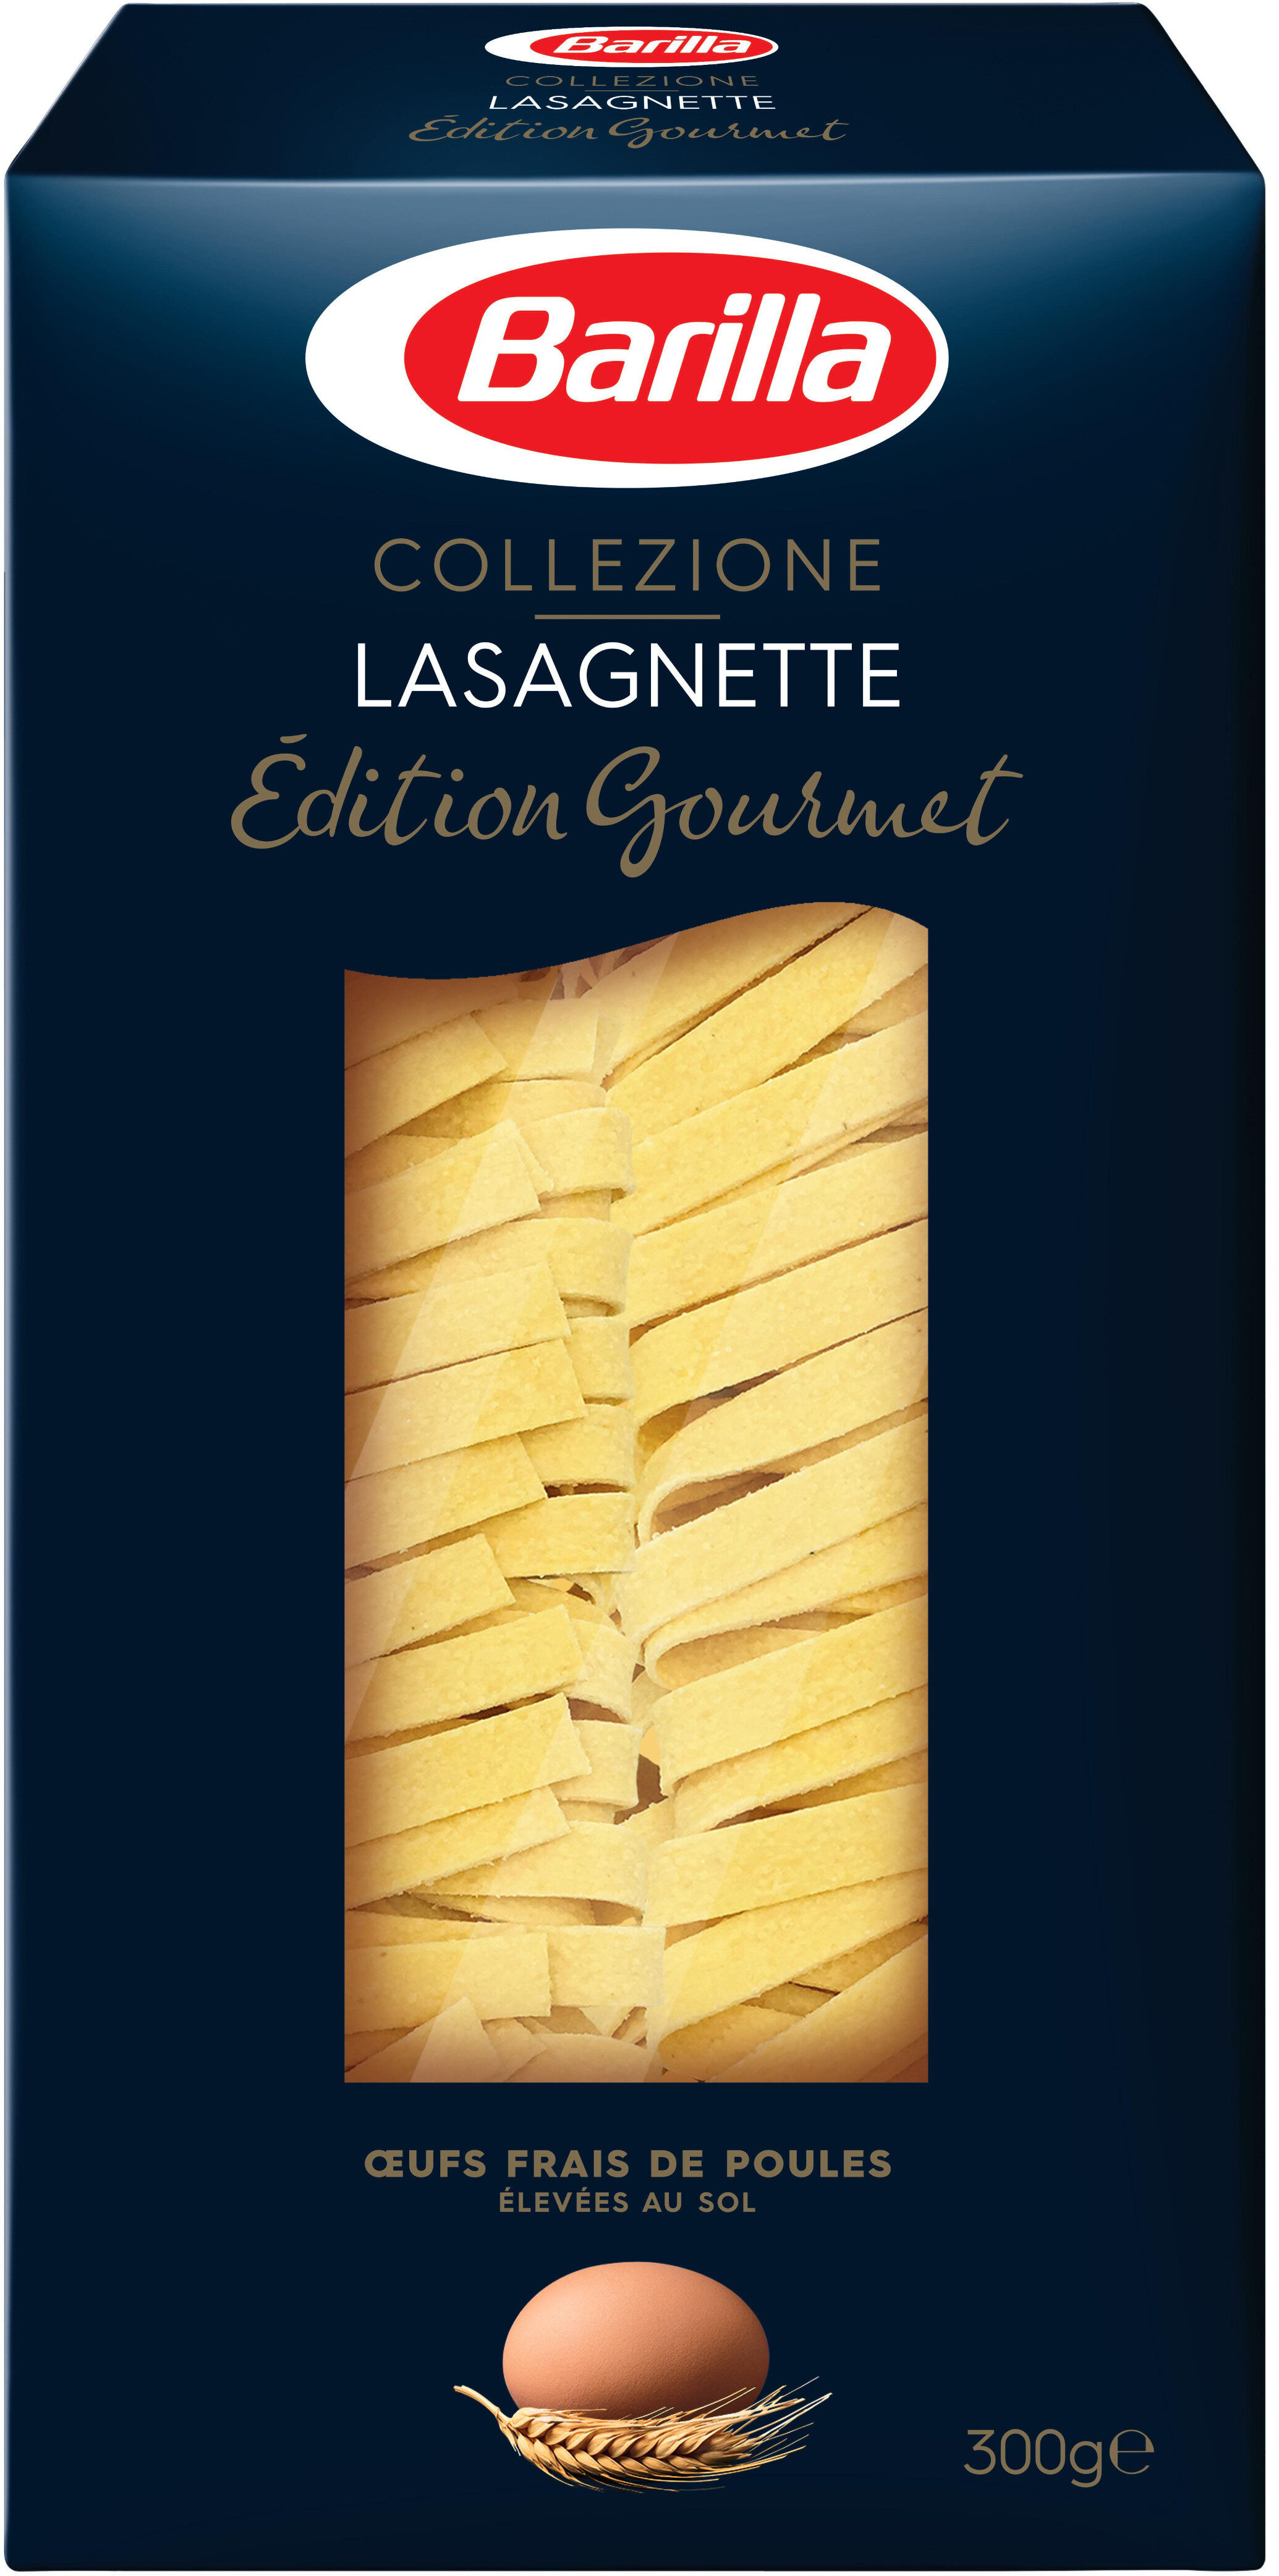 Pâtes Lasagnette - Producto - fr